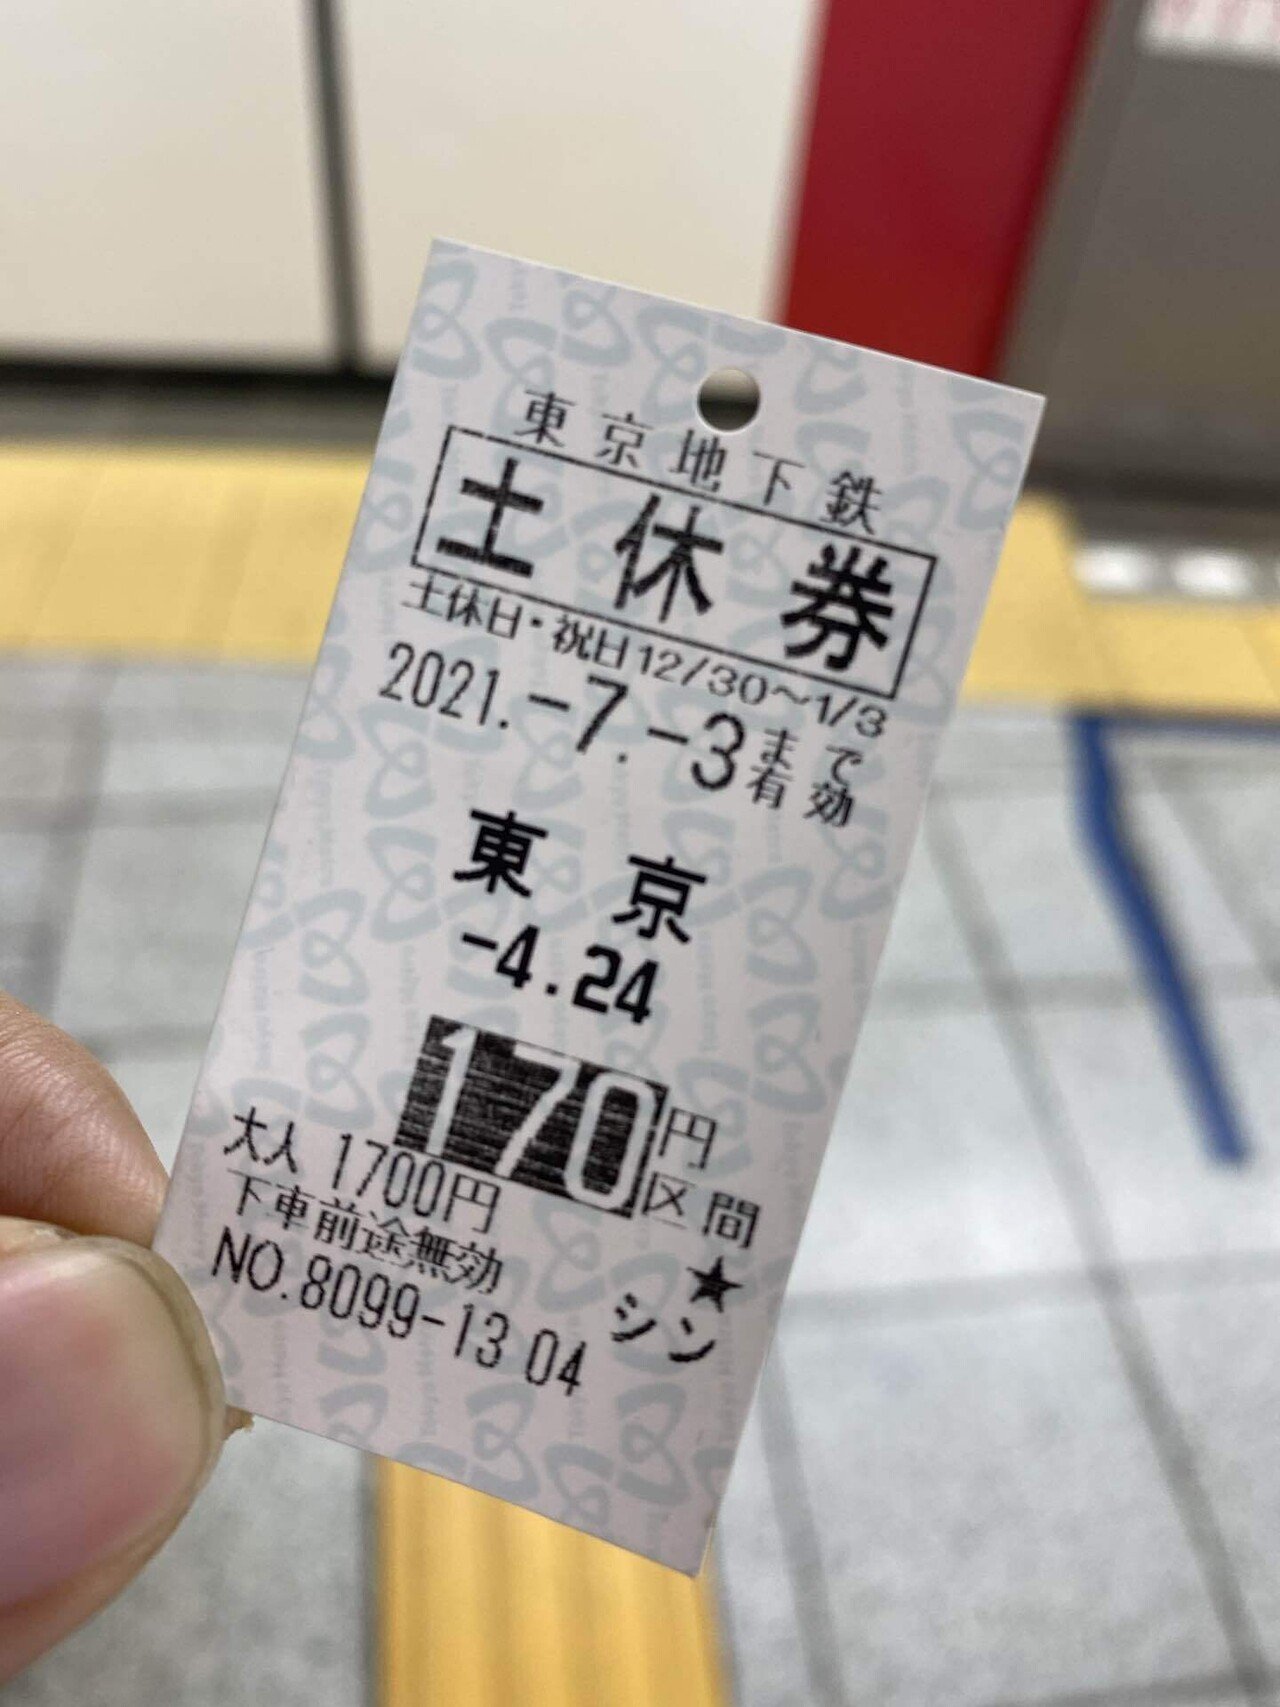 地下鉄170円回数券 170✖️11枚✖️4セット - 鉄道乗車券